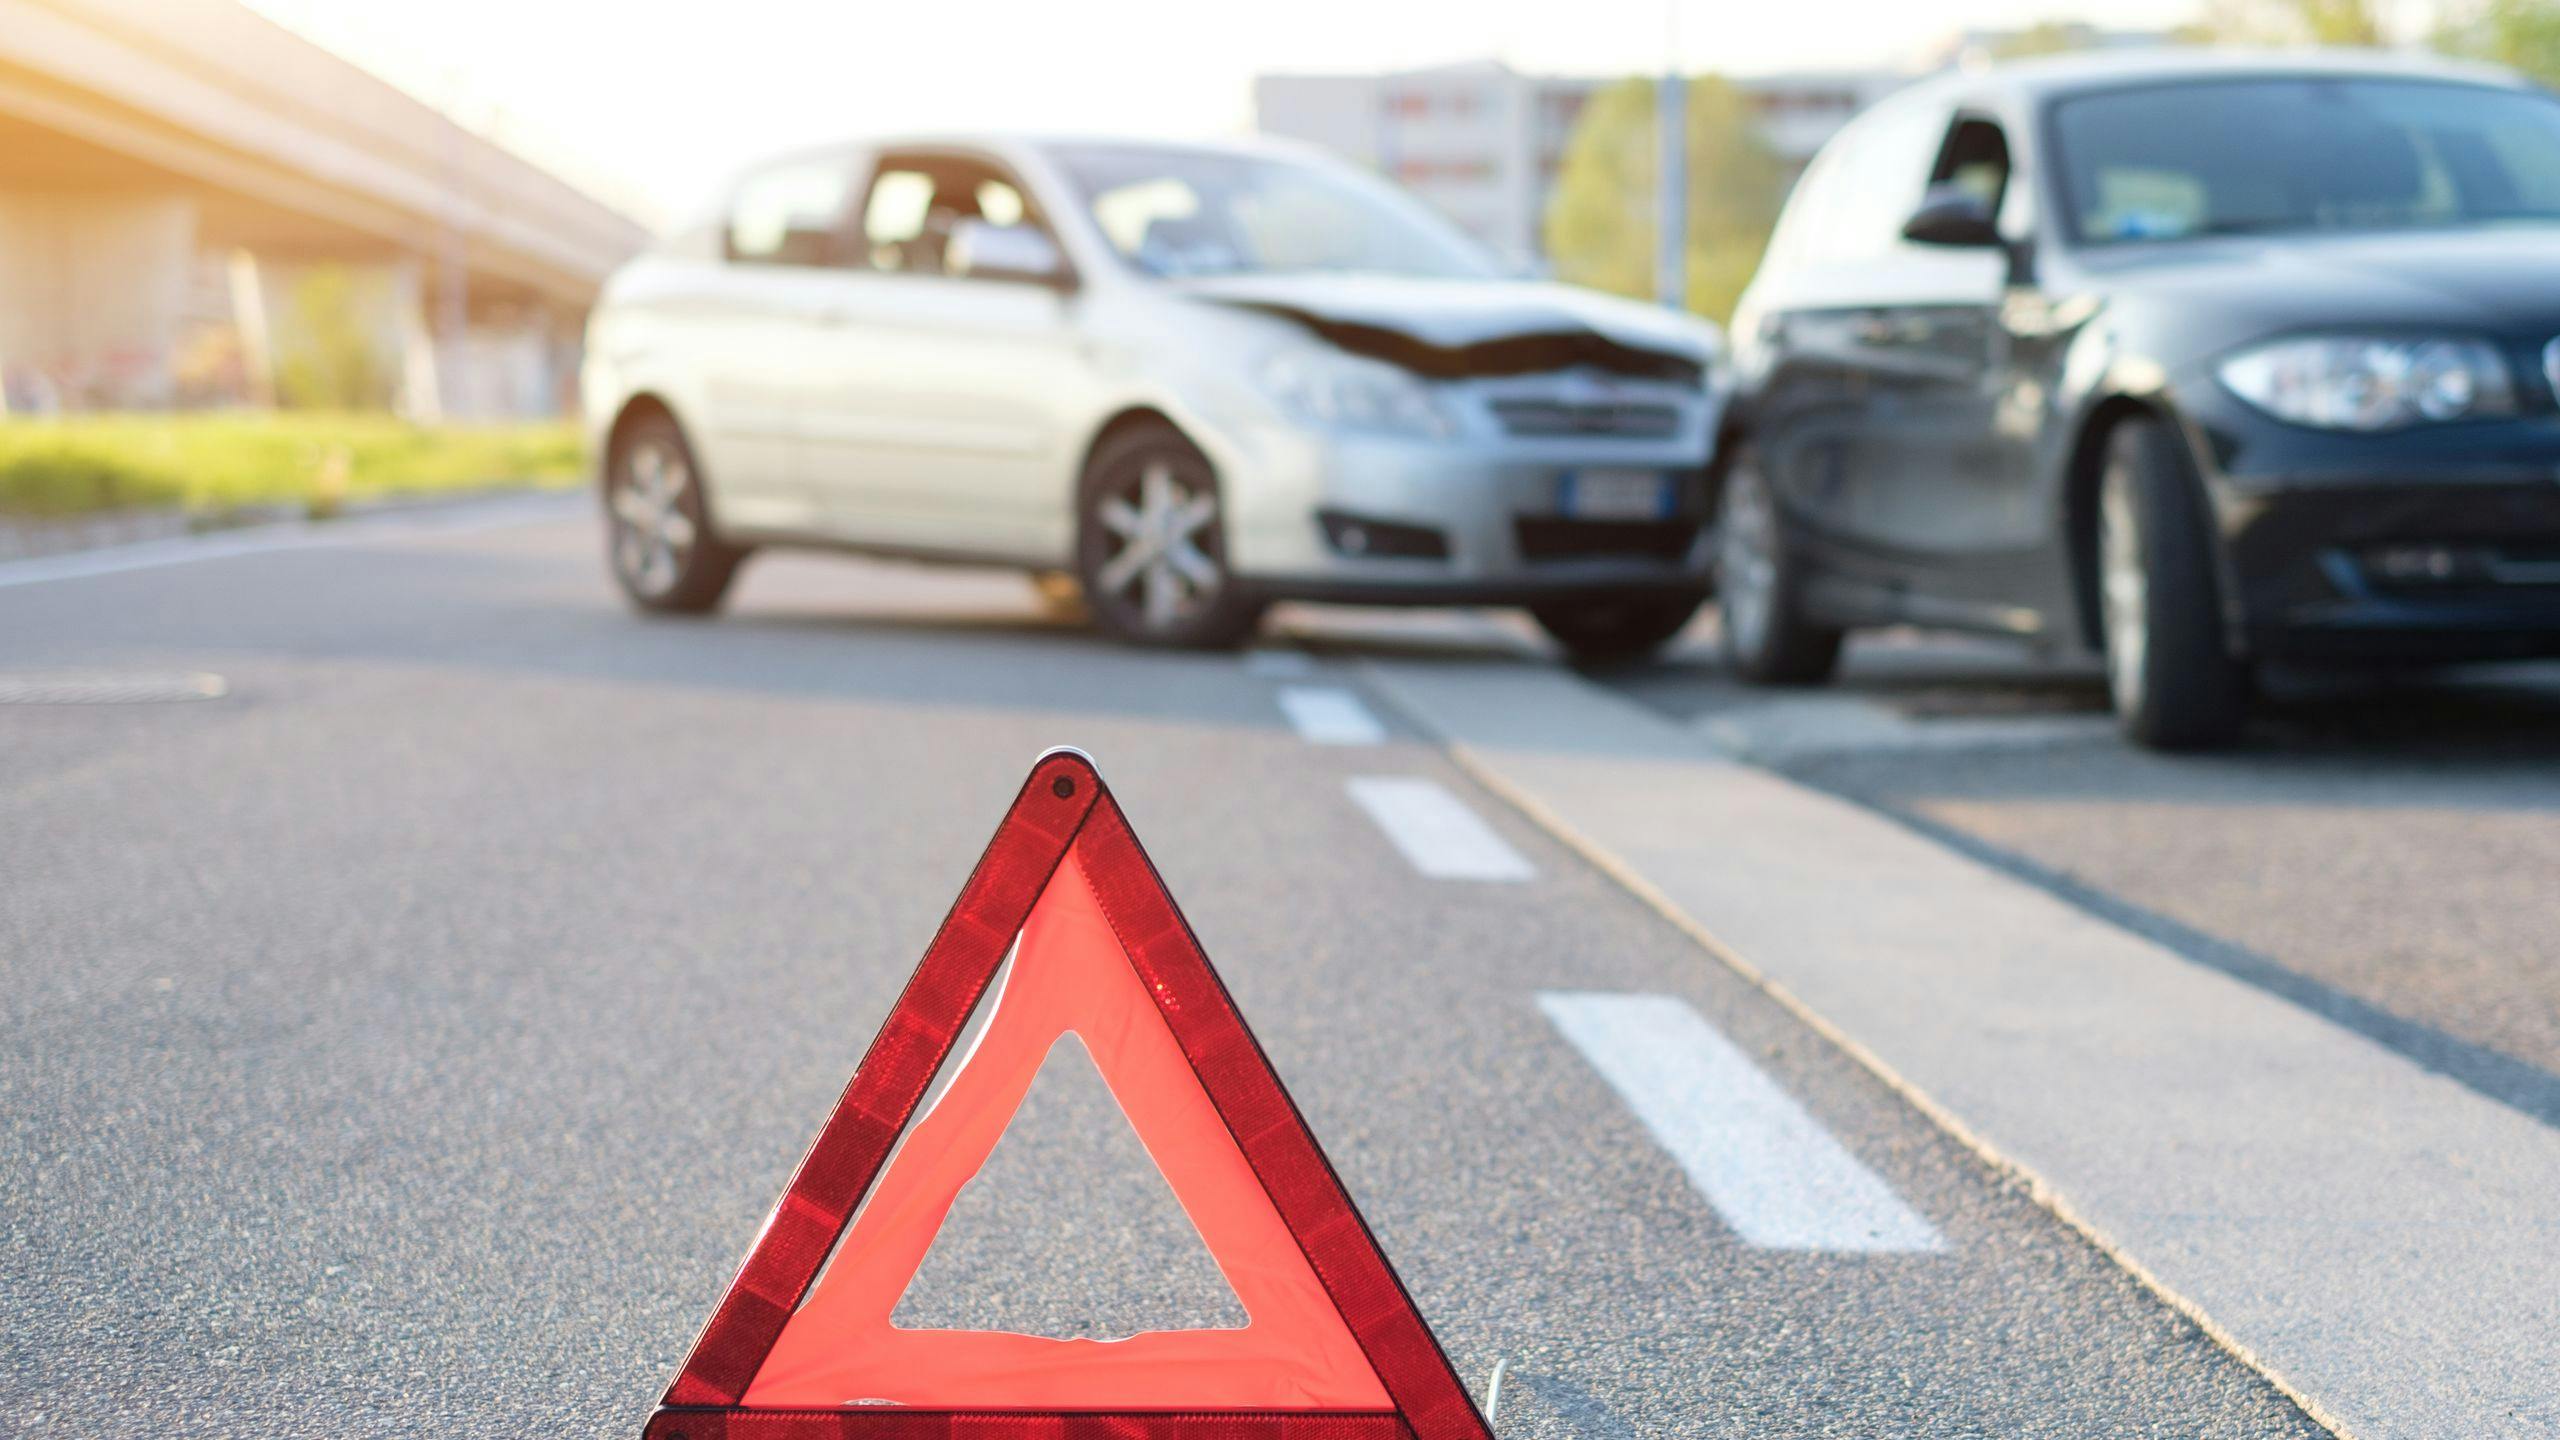 Indemnisation accident de voiture Luxembourg : comment ça marche ?